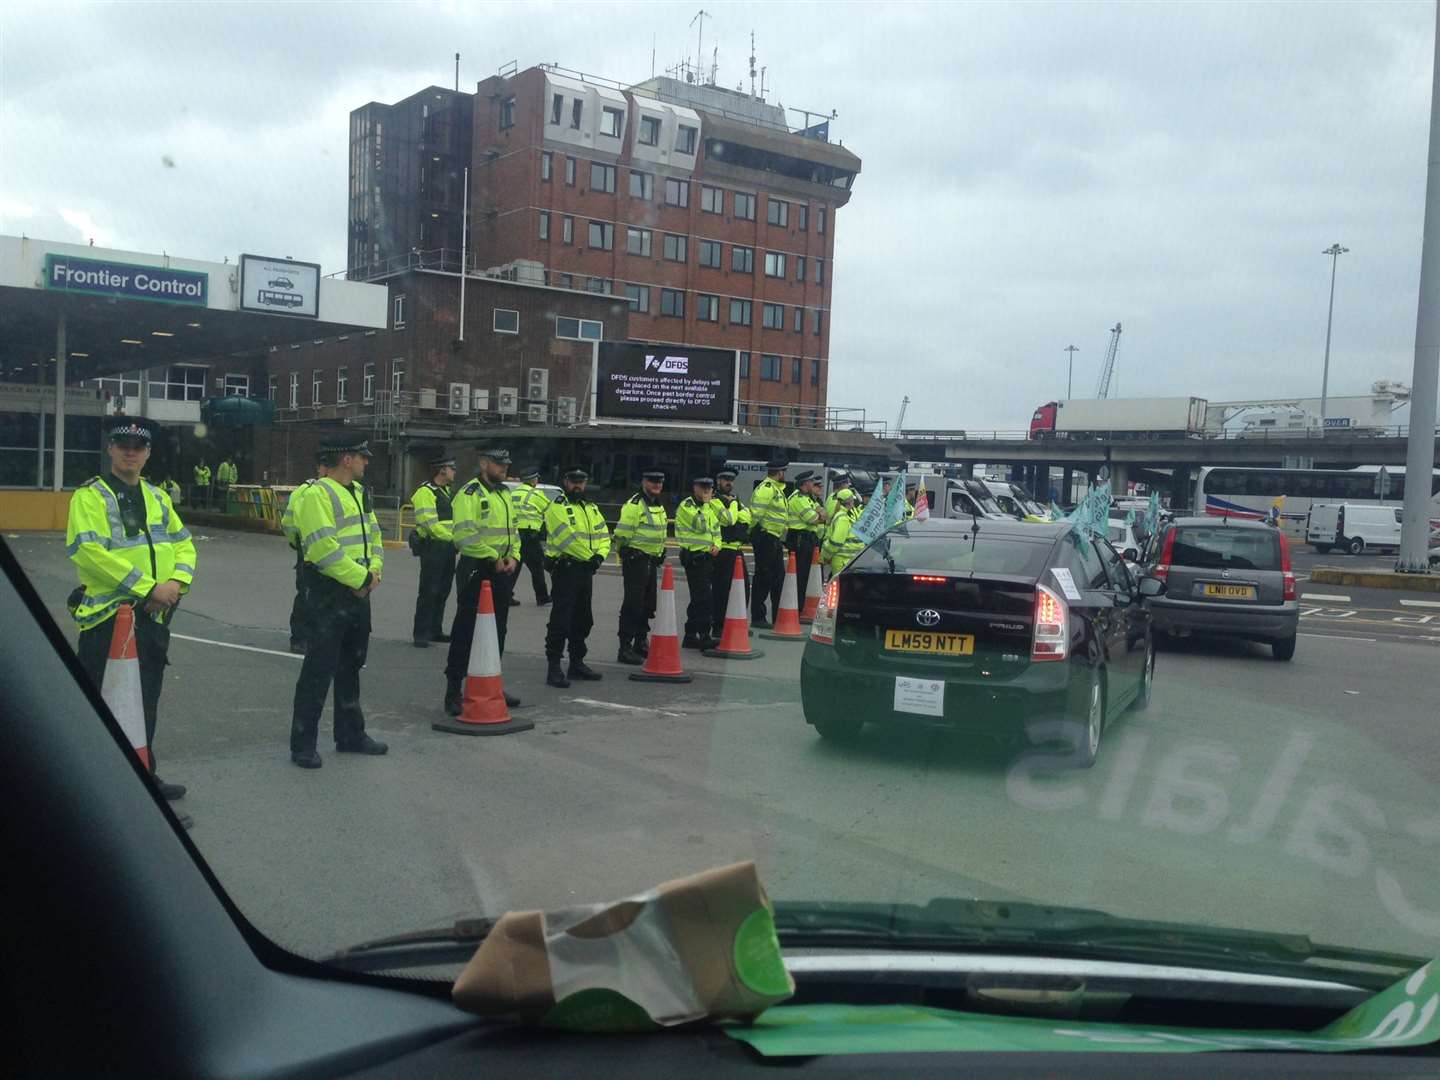 Police presence at port